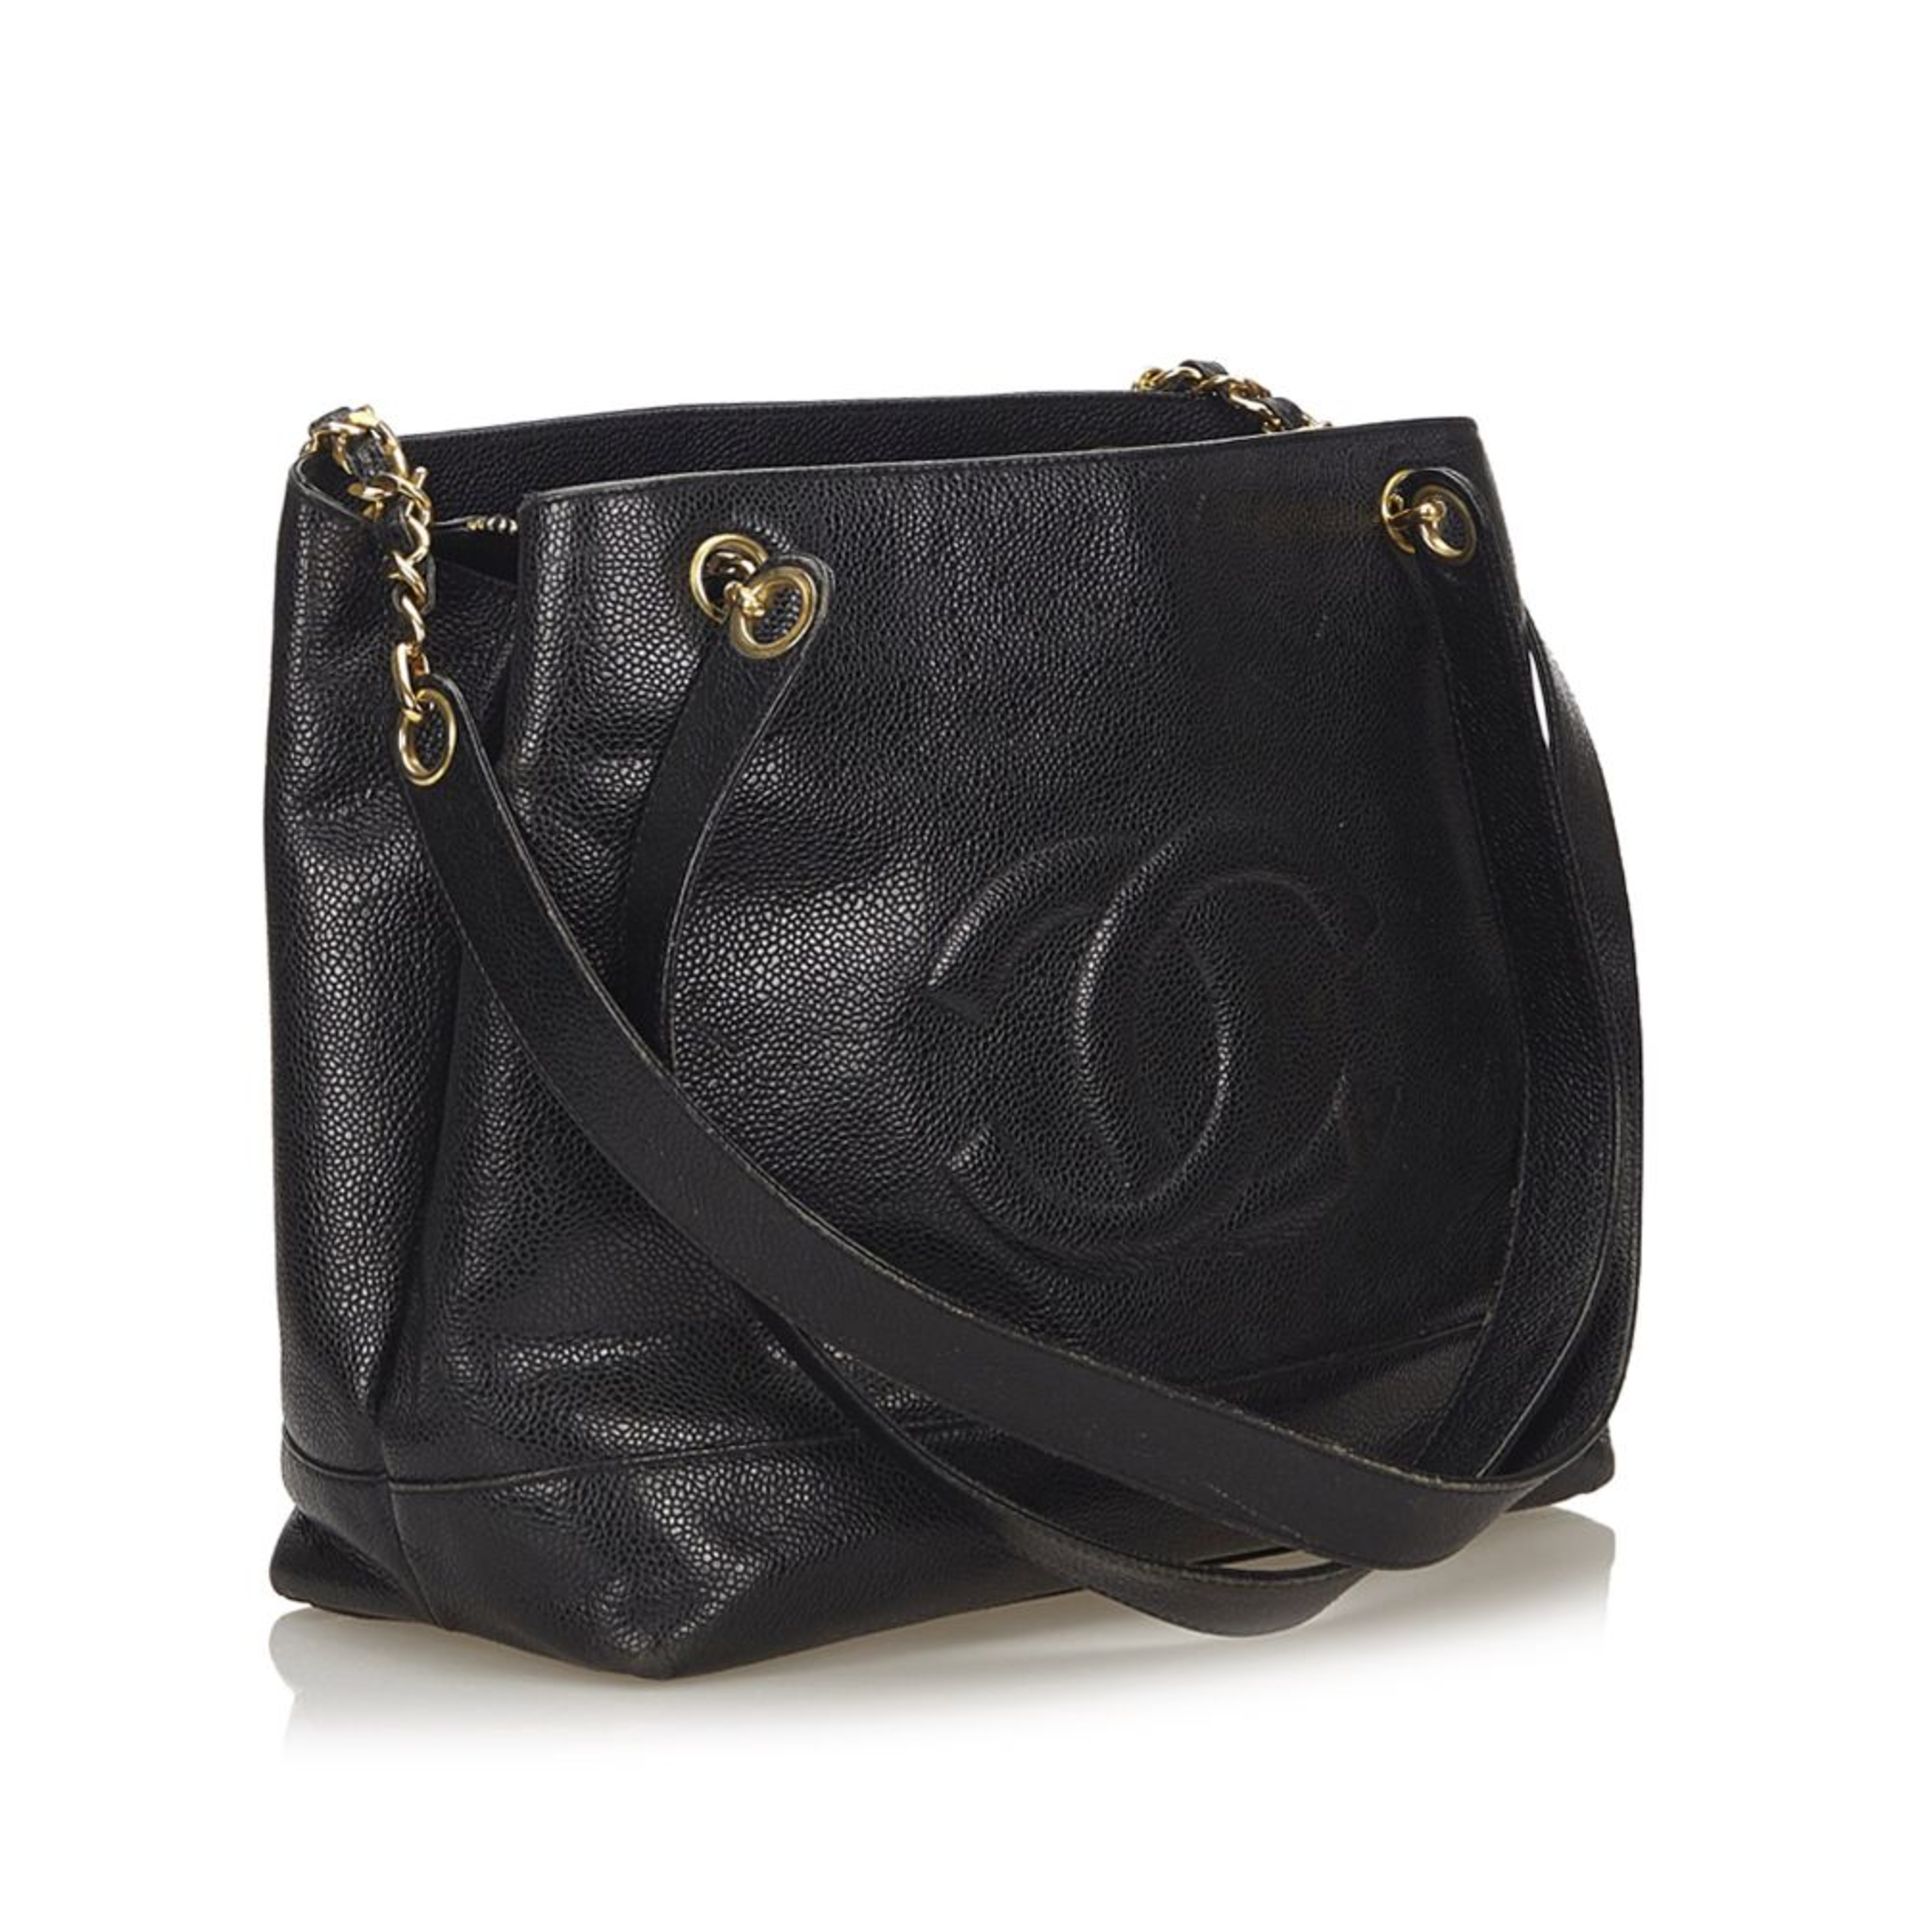 A Chanel 'CC' caviar leather shoulder bag,featuring a caviar leather body, flat leather straps - Bild 2 aus 6